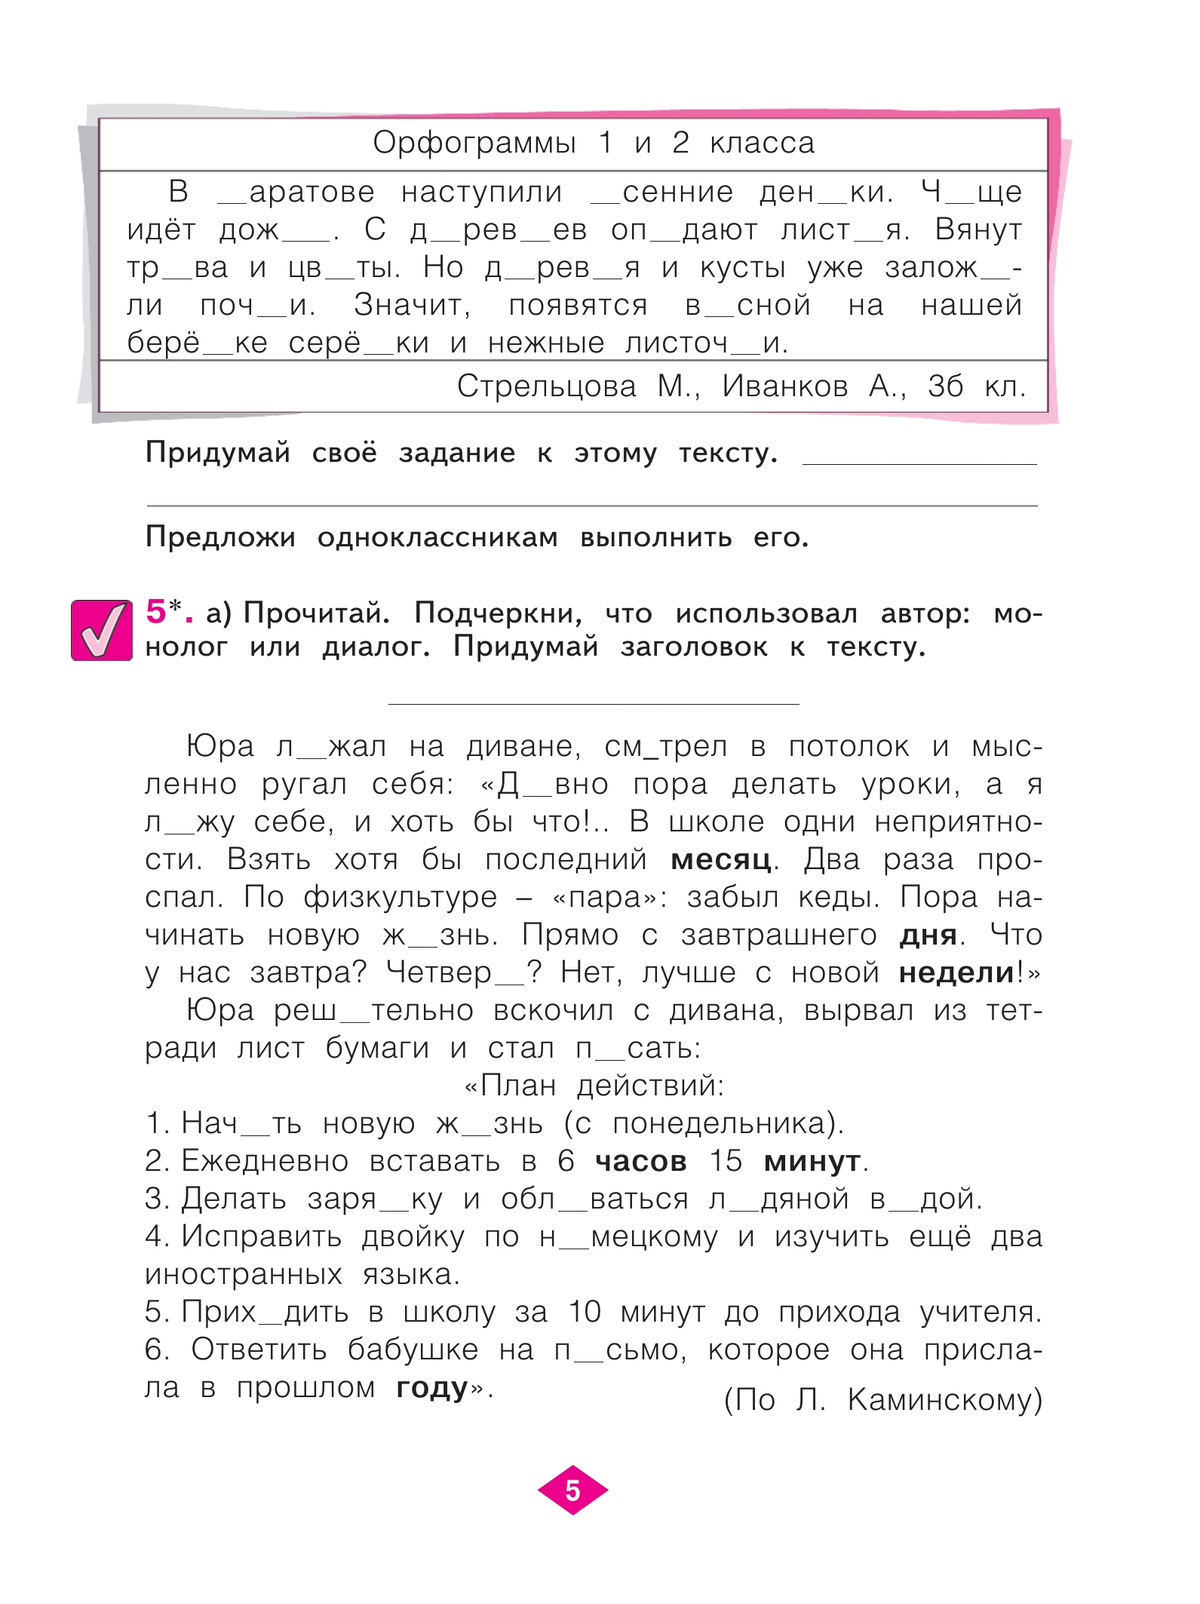 Русский язык. Рабочая тетрадь. 3 класс. В 4-х частях. Часть 1 4